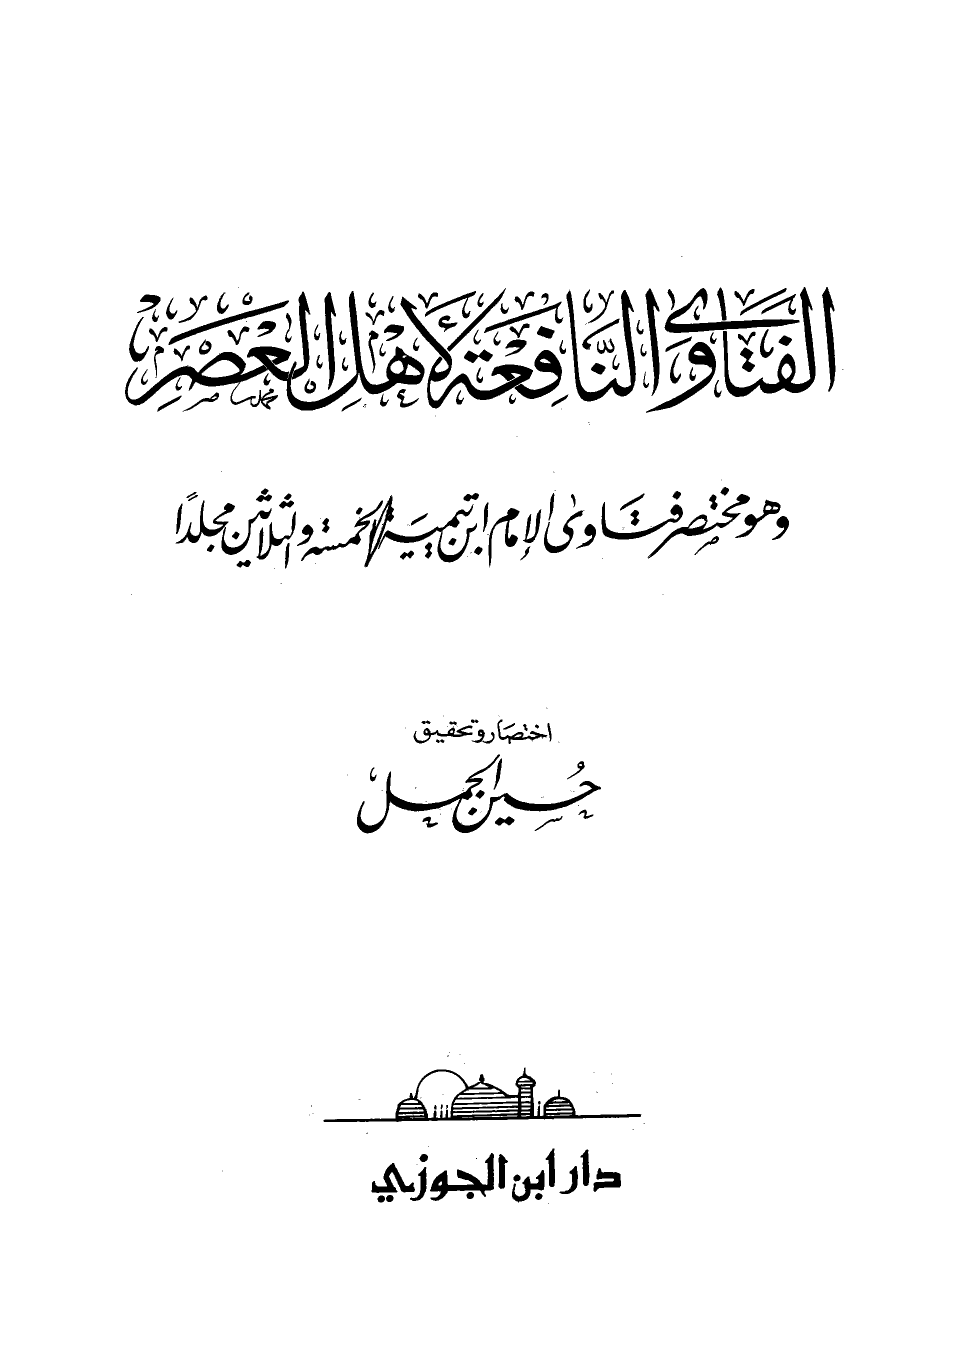 الفتاوى النافعة لأهل العصر وهو مختصر فتاوى الإمام ابن تيمية الخمسة والثلاثين مجلدا